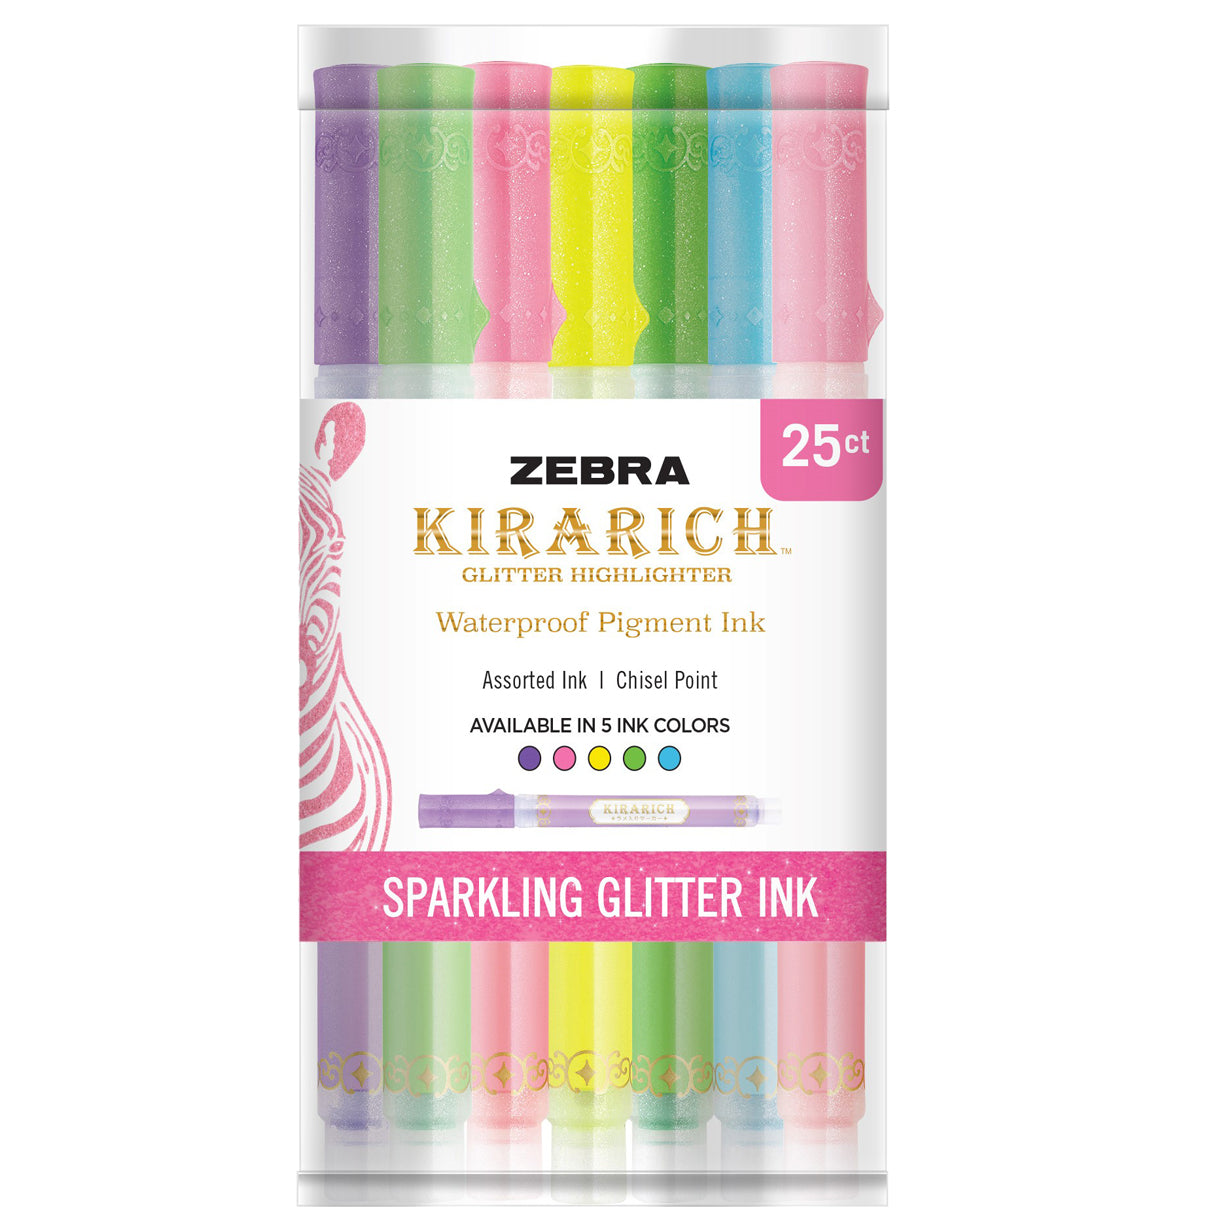 Zebra Kirarich Glitter Highlighter - Pink